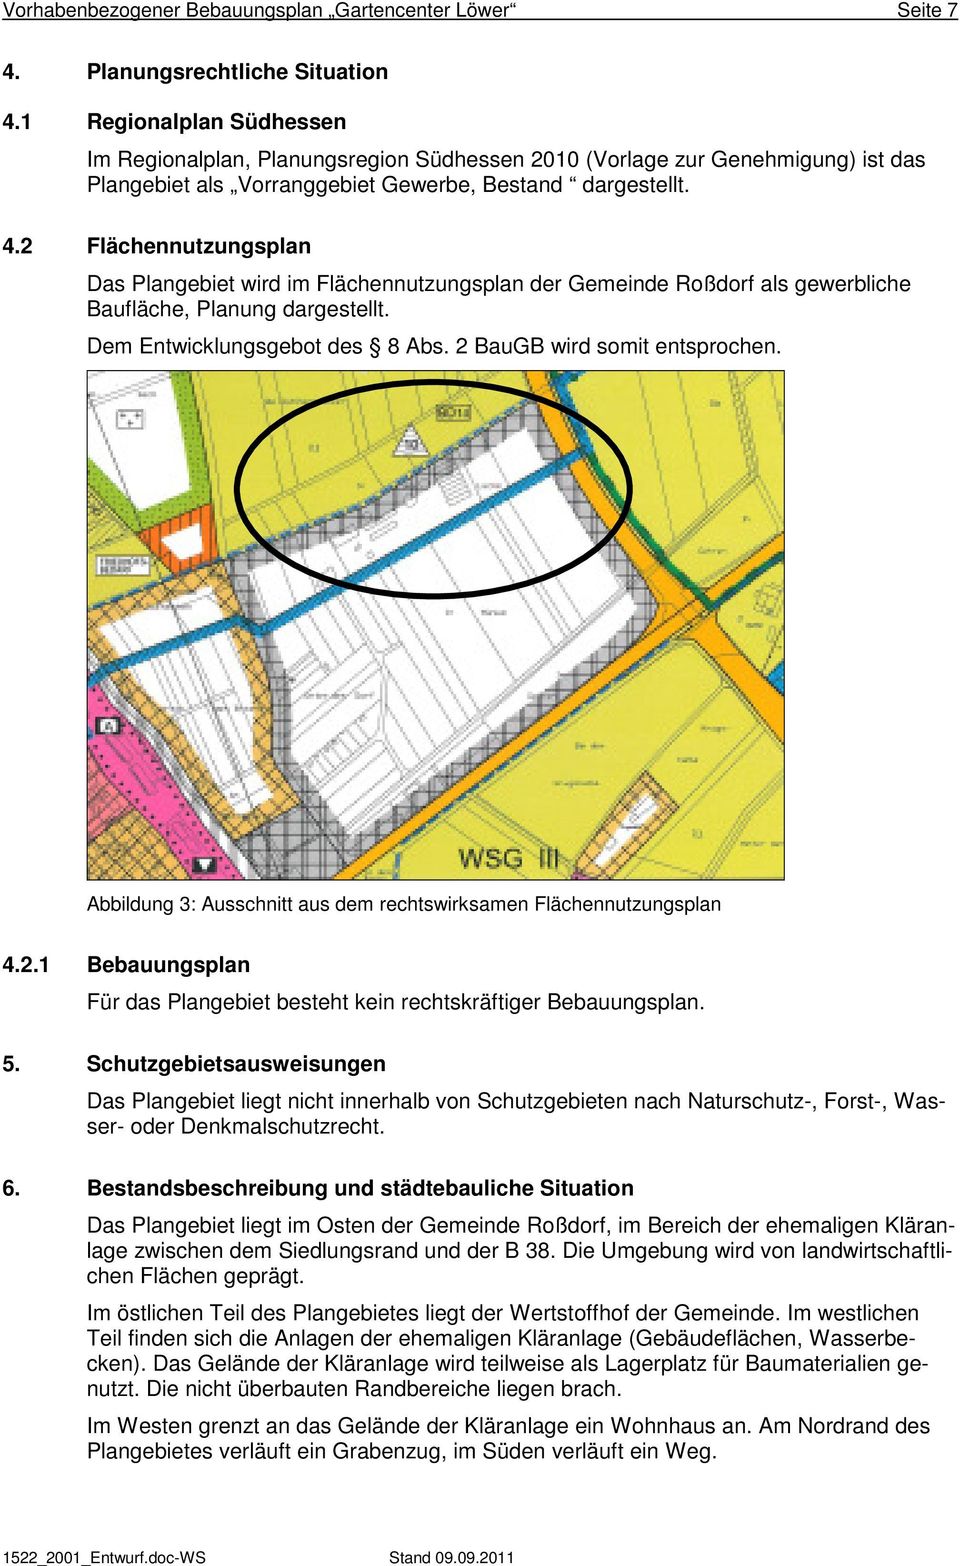 2 Flächennutzungsplan Das Plangebiet wird im Flächennutzungsplan der Gemeinde Roßdorf als gewerbliche Baufläche, Planung dargestellt. Dem Entwicklungsgebot des 8 Abs. 2 BauGB wird somit entsprochen.